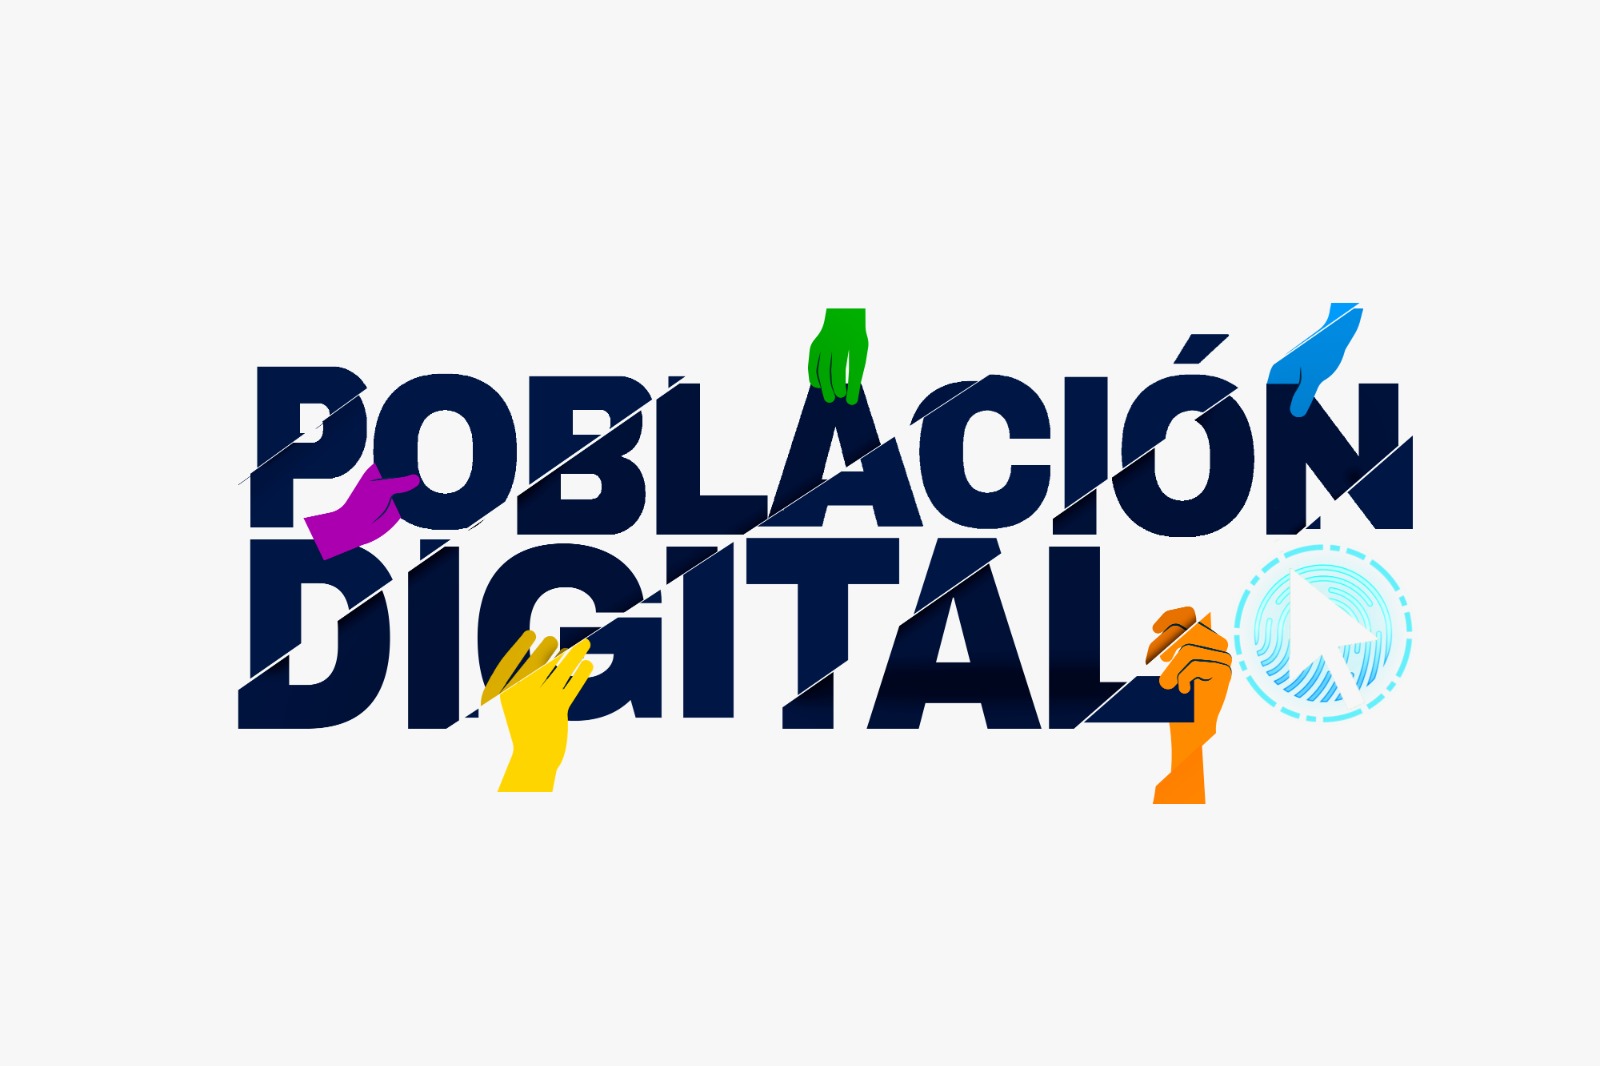 Población_Digital.jpg - 99.10 kB